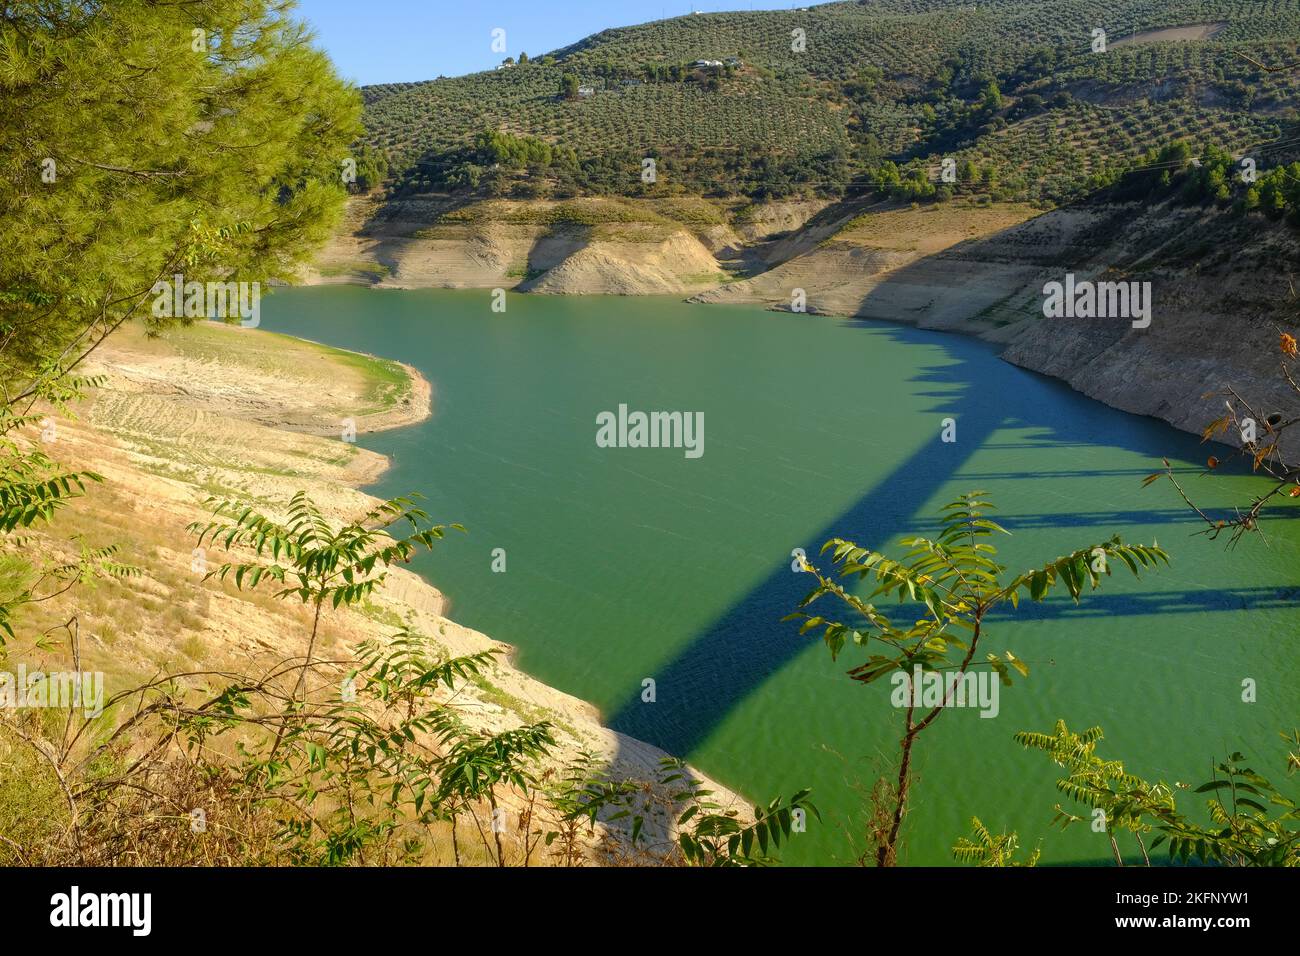 Die Trockenheit zeigt einen Wasserstand von 15 % in Iznajar Embalse, dem größten Stausee in Andalusien, Spanien Stockfoto